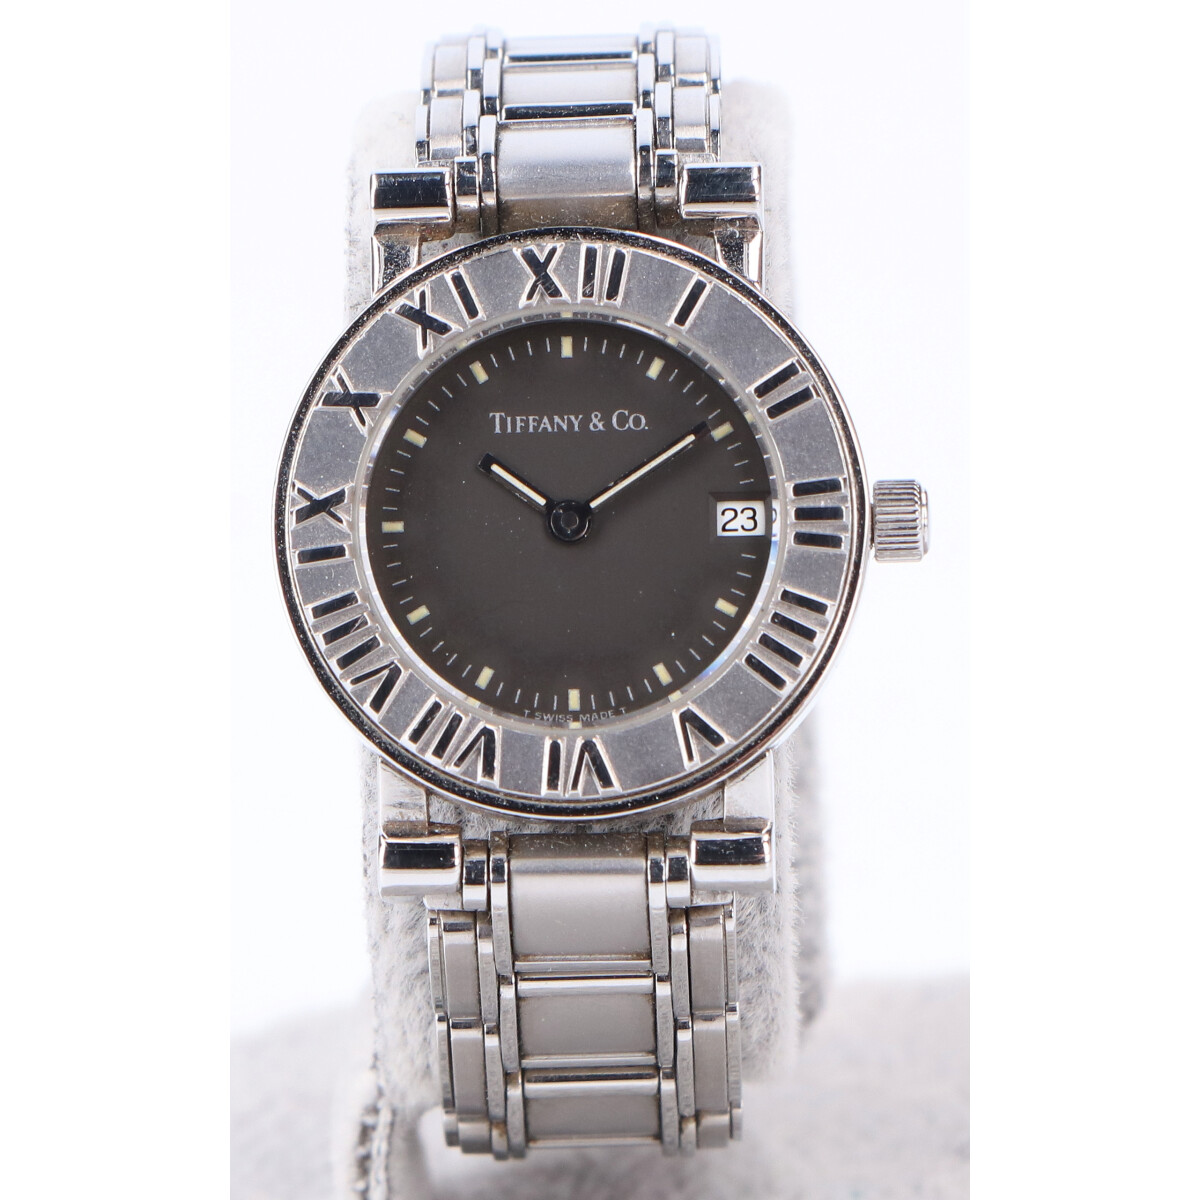 ティファニーのステンレススチール 黒文字盤 アトラスデイトクオーツ腕時計の買取実績です。